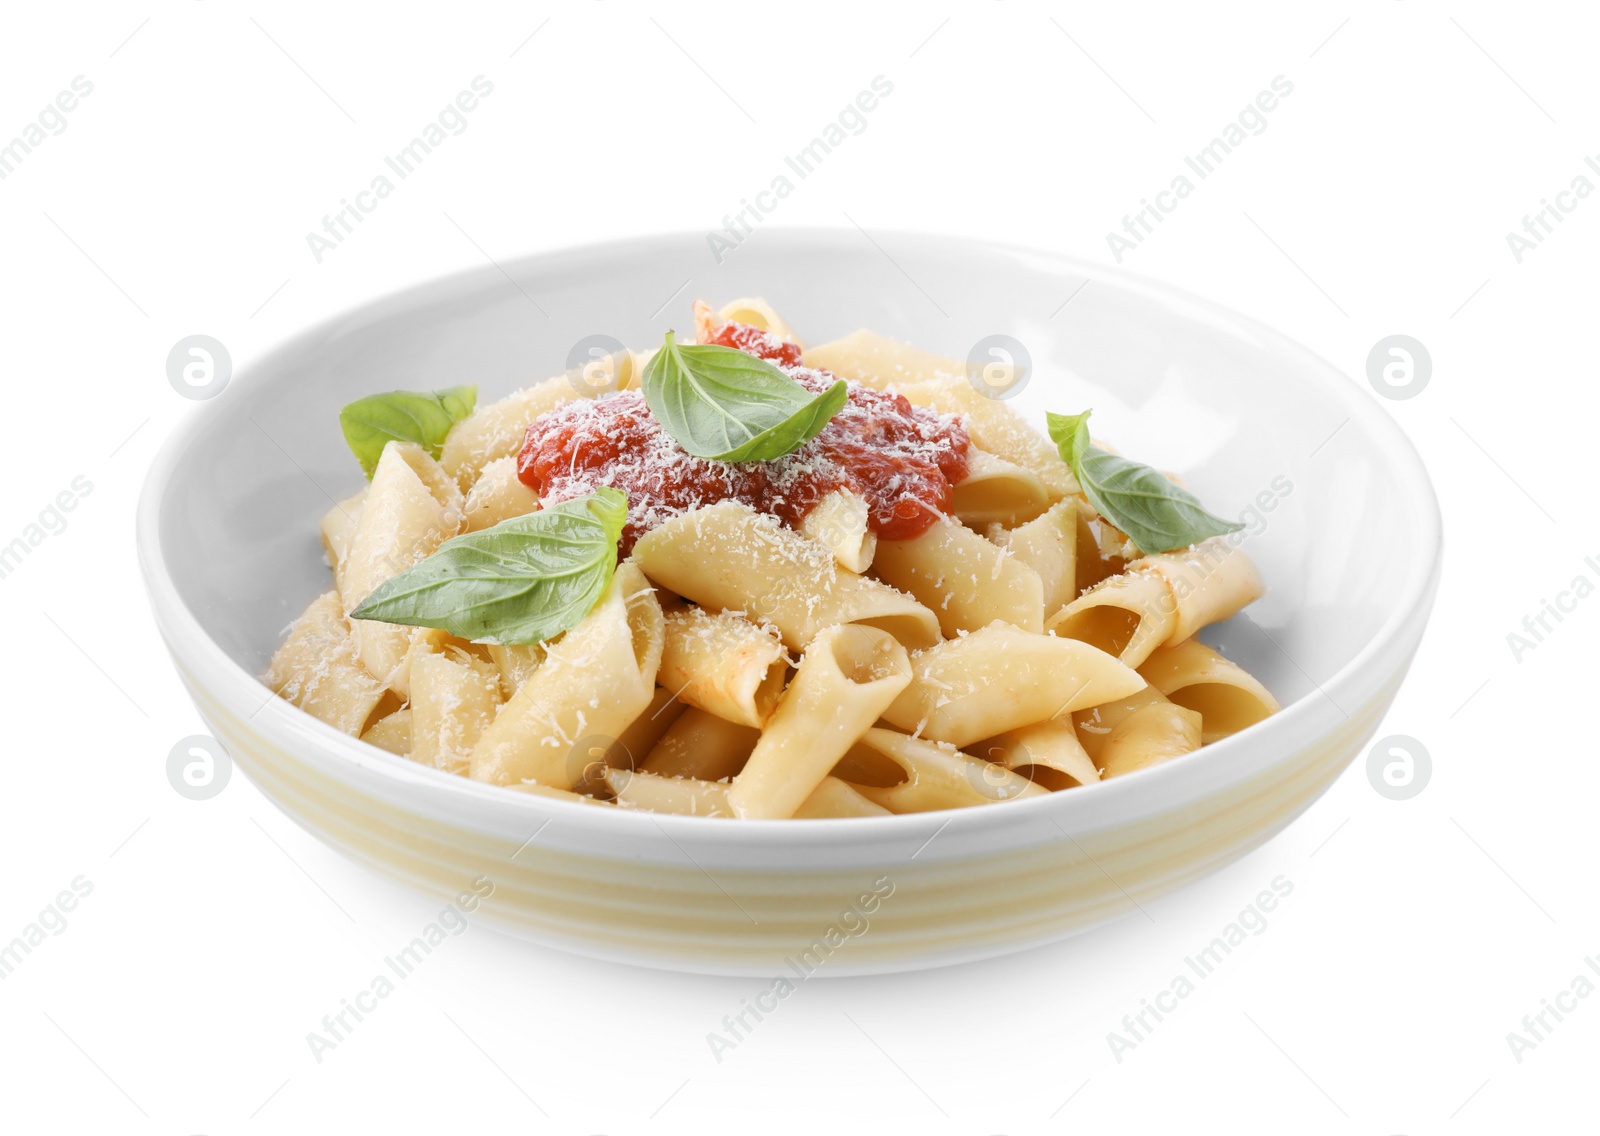 Photo of Delicious maltagliati pasta with tomato sauce isolated on white